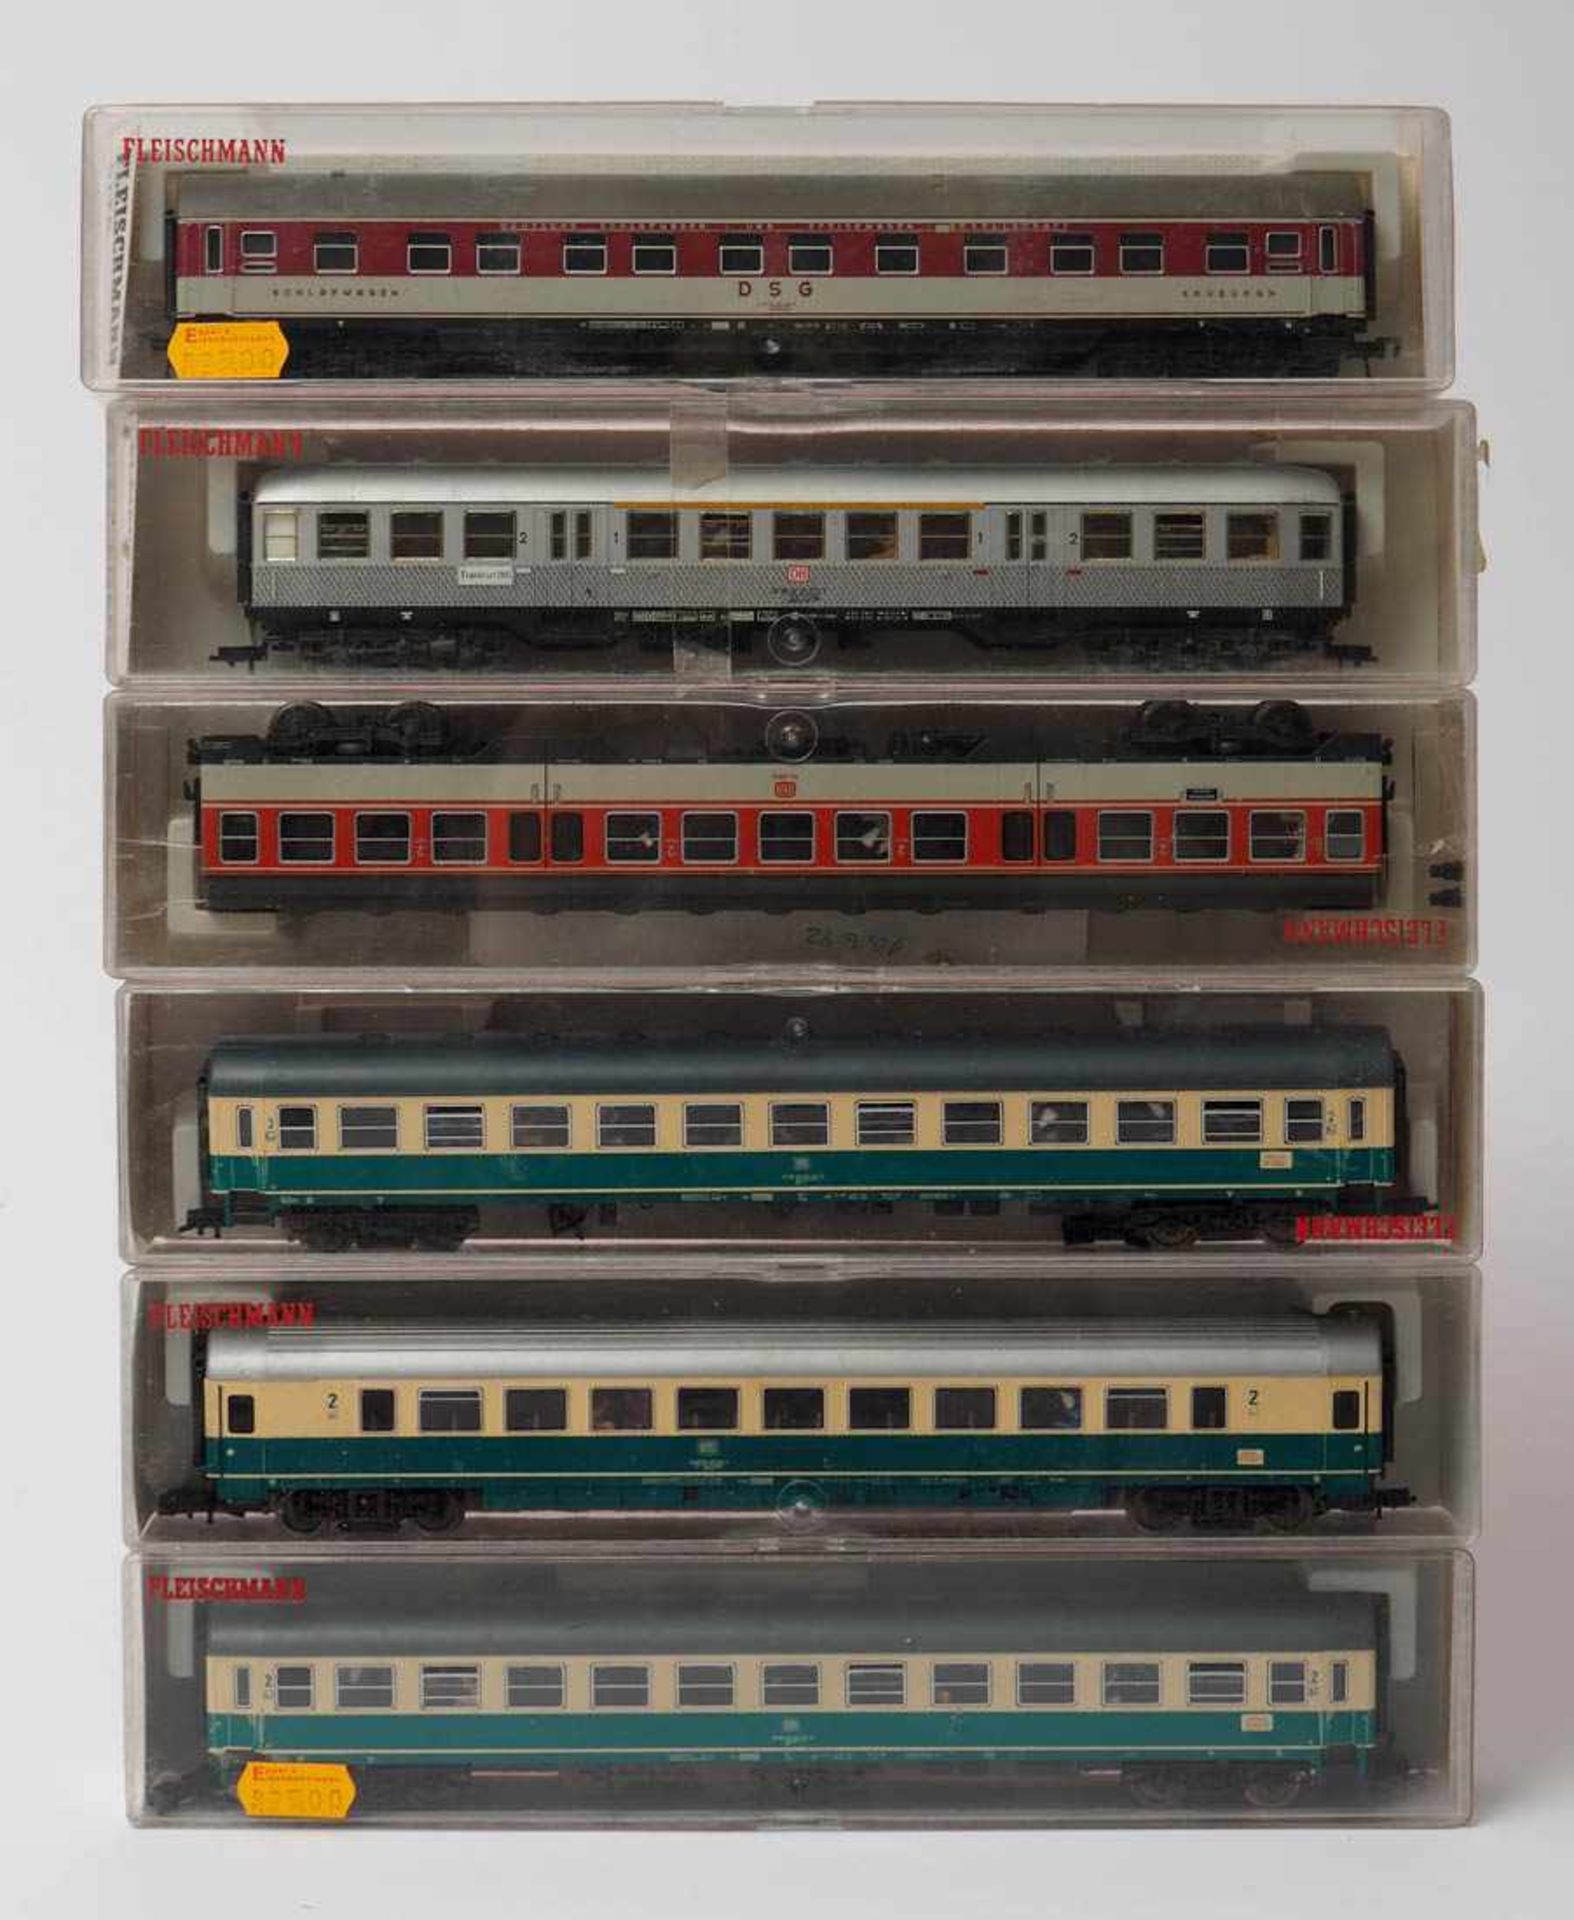 Sechs Schnellzugwagen, Fleischmann, Spur H0 Modellnummern 5104, 5194, 4432, 5121 und 5174. Dazu